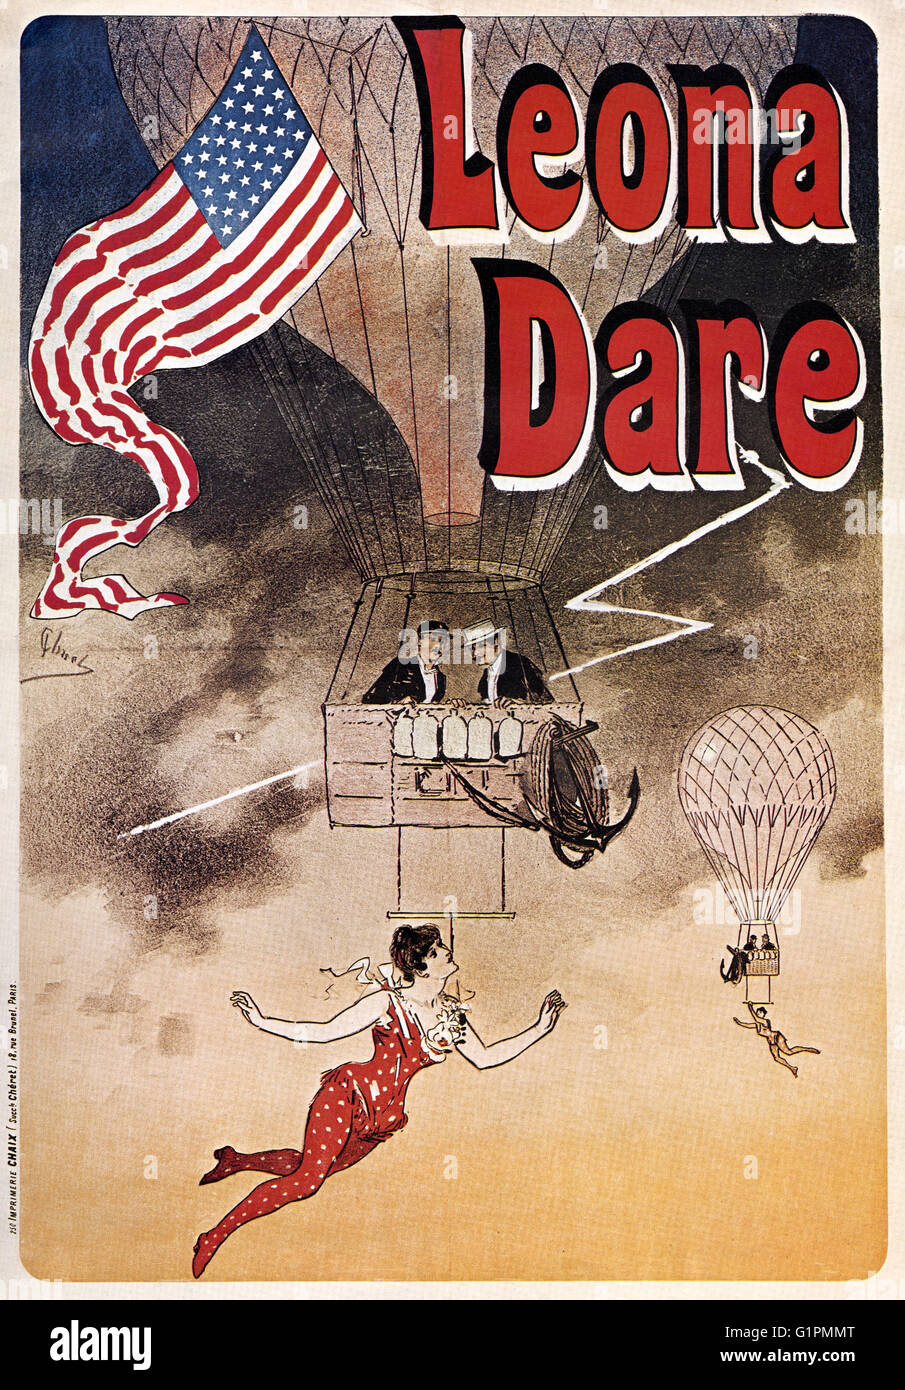 Plakat: LEONA DARE, c1895.  Französisches Plakat Werbung Trapezkünstler, Leona Dare aus einem Heißluftballon angehalten. Lithographie von Jules Cheret, c1895. Stockfoto